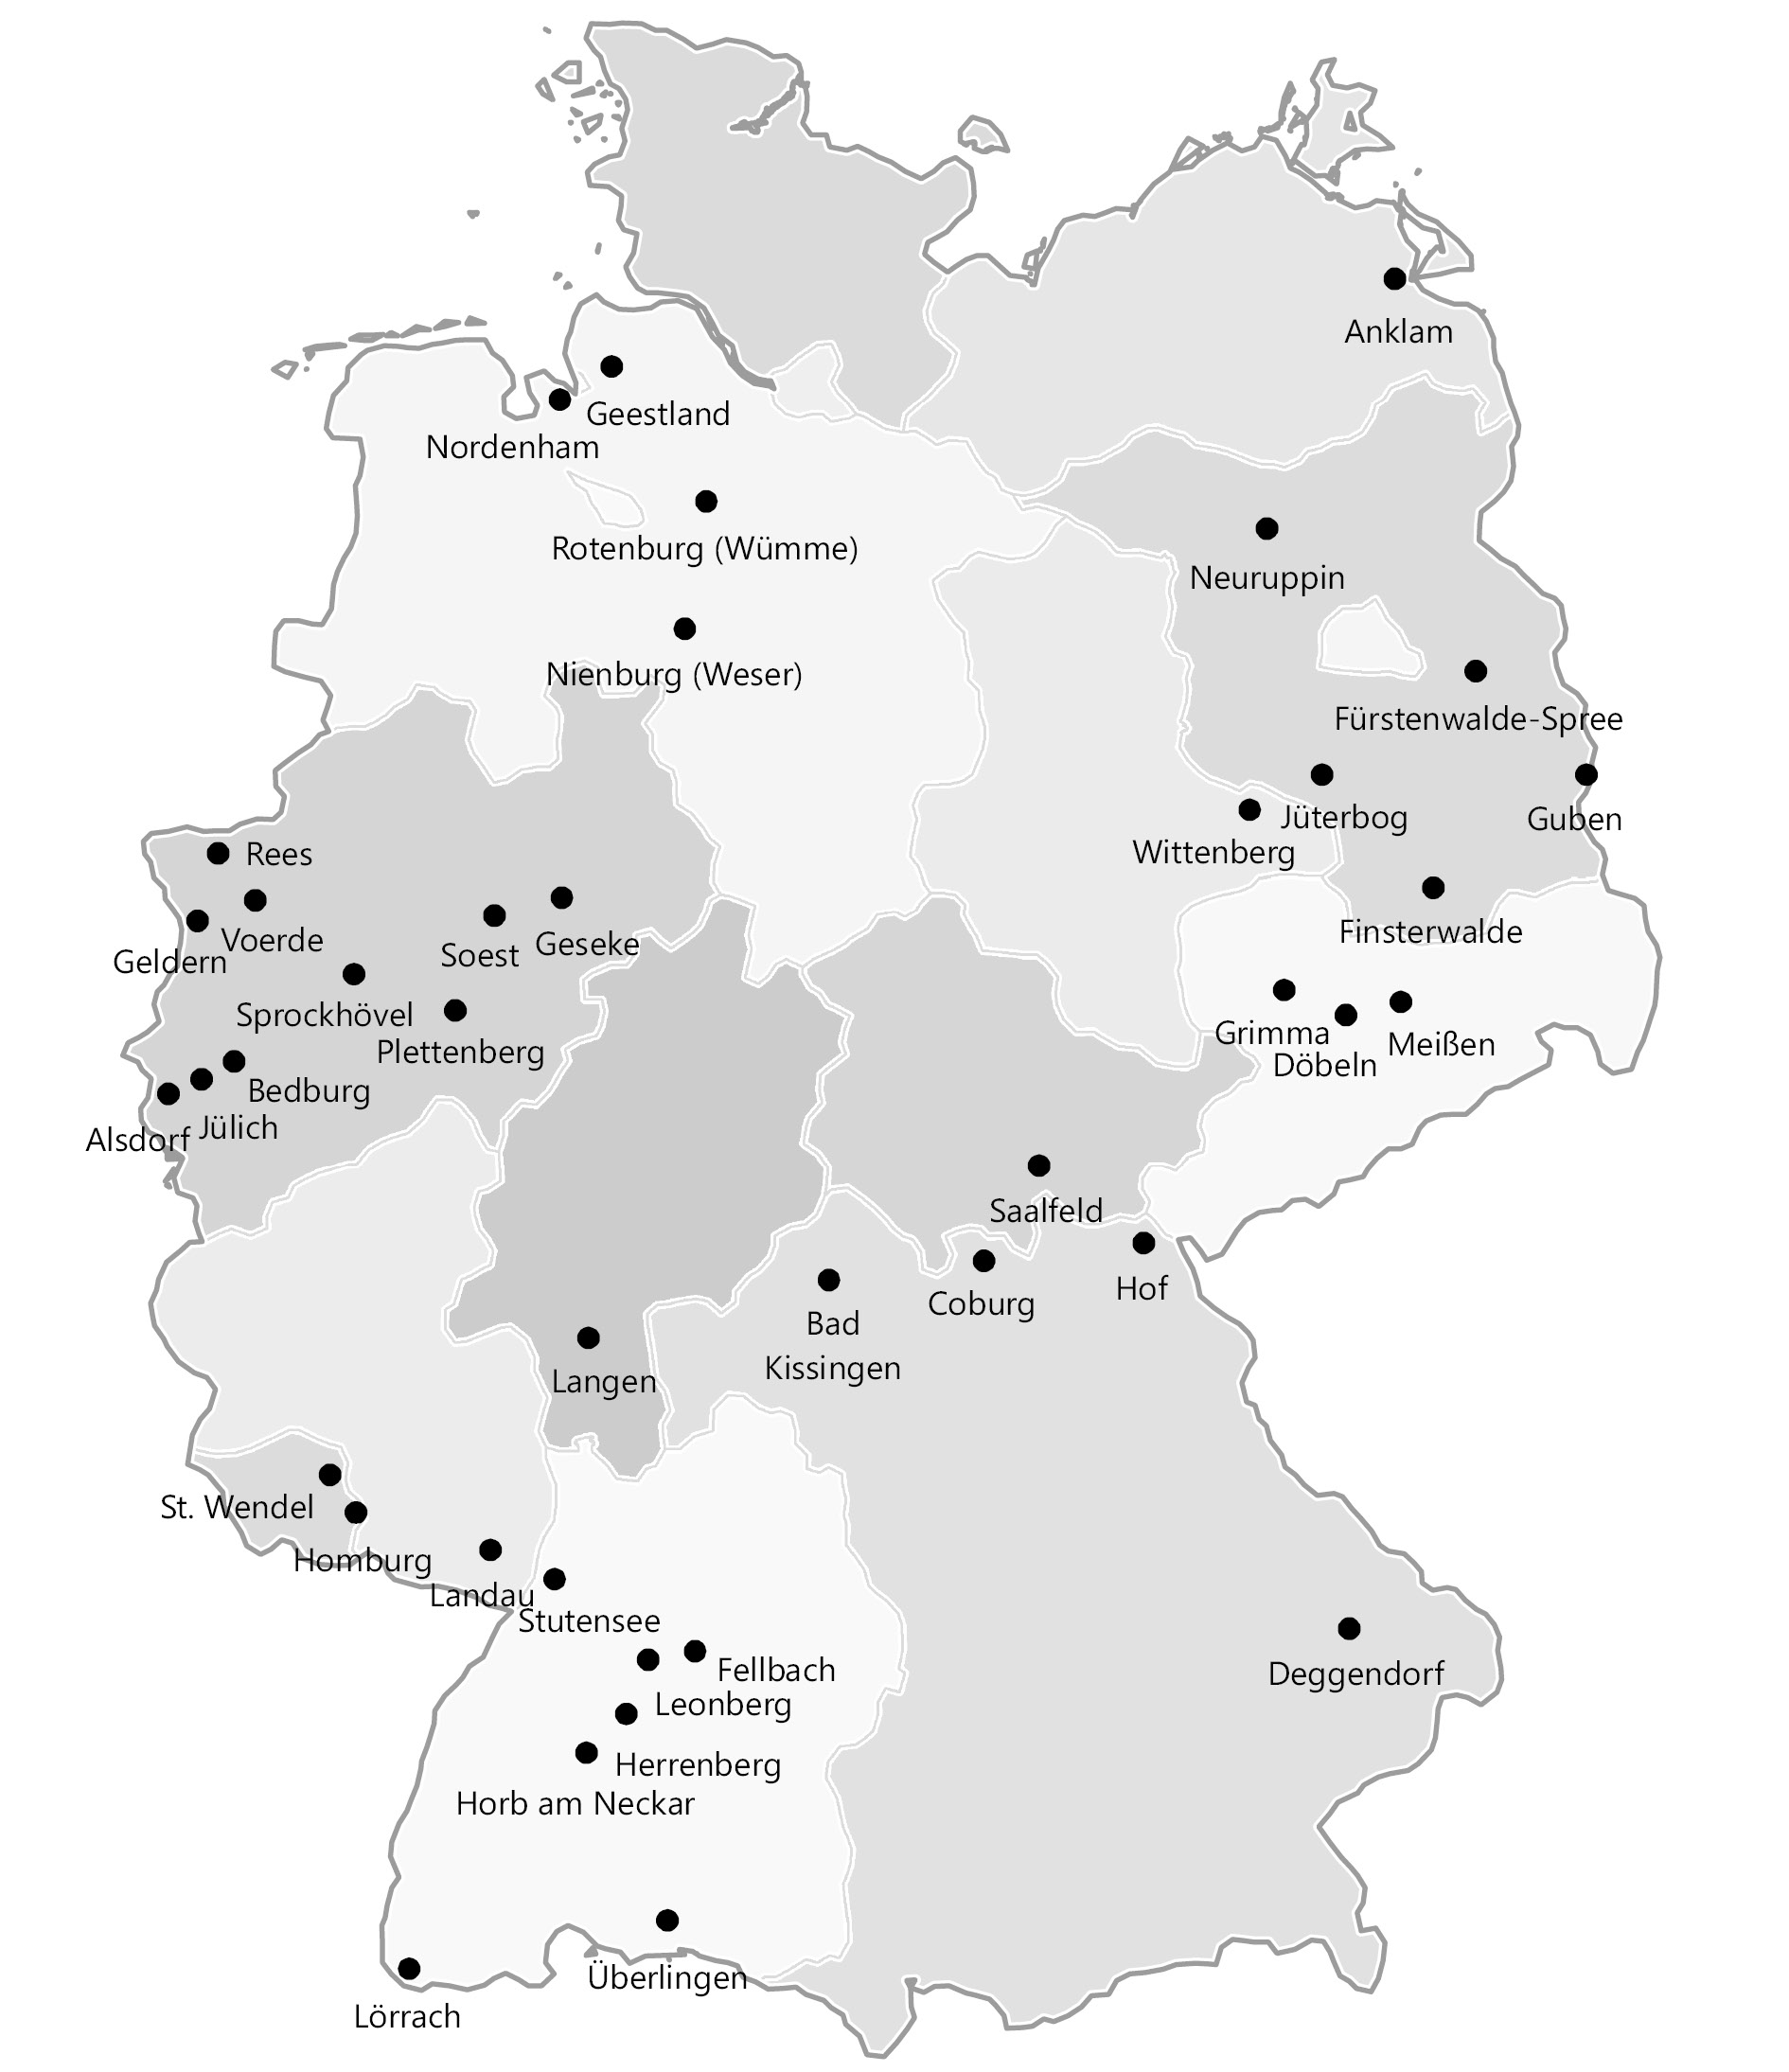 Abbildung vier zeigt eine Deutschlandkarte mit den Städten im Mittelstadtnetzwerk. Diese verteilen sich ausgehend von Anklam, Geestland, Nordenham, Rotenburg (Wümme) Neuruppin, Nienburg (Weser) im Norden über die Städte Fürstenwalde- Spree, Jüterbog, Guben, Wittenberg, Finsterwalde, Grimma, Döbeln, Meißen im Osten Deutschlands sowie die Kommunen Rees, Voerde, Geldern, Sprockhövel, Soest, Geseke, Plettenberg, Bedburg, Jülich und Alsdorf im Westen, sowie die fünf Städte Langen, Bad Kissingen, Coburg, Saalfeld und Hof in der Mitte Deutschlands bis hin zu St. Wendel, Homburg, Landau, Stutensee, Fellbach, Leonberg, Herrenberg, Horb am Neckar, Deggendorf, Überlingen und Lörrach im Süden Deutschlands.